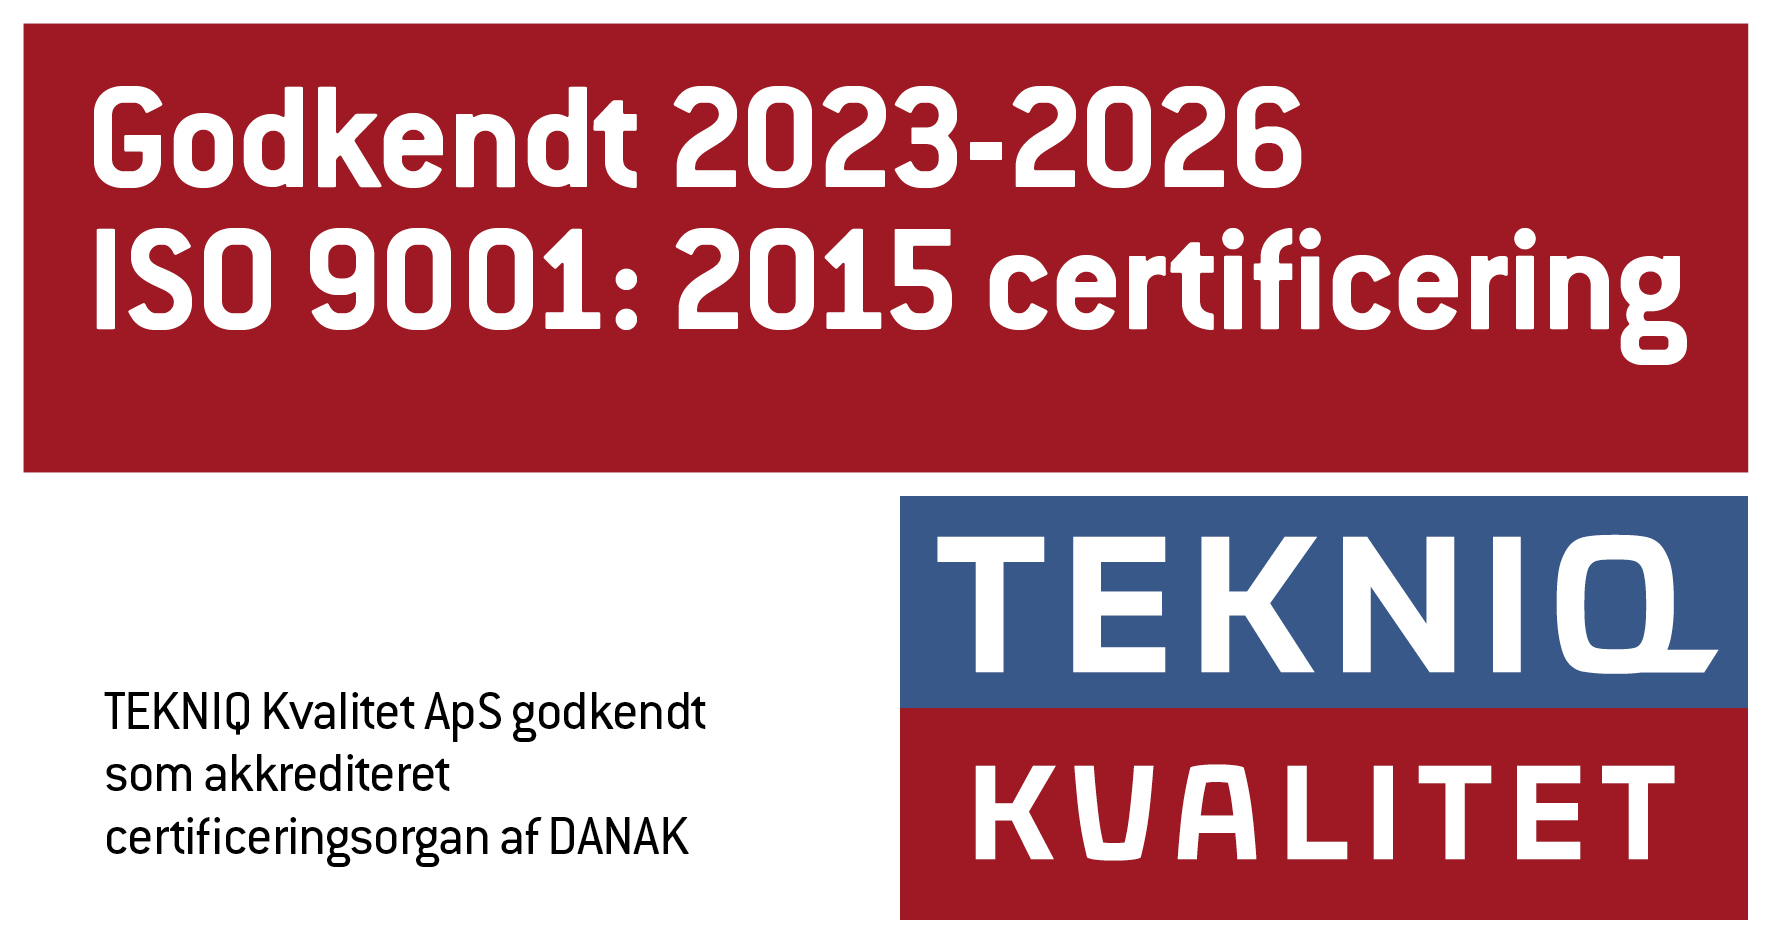 Godkendt 2023-2026 ISO9001:2015 certificering